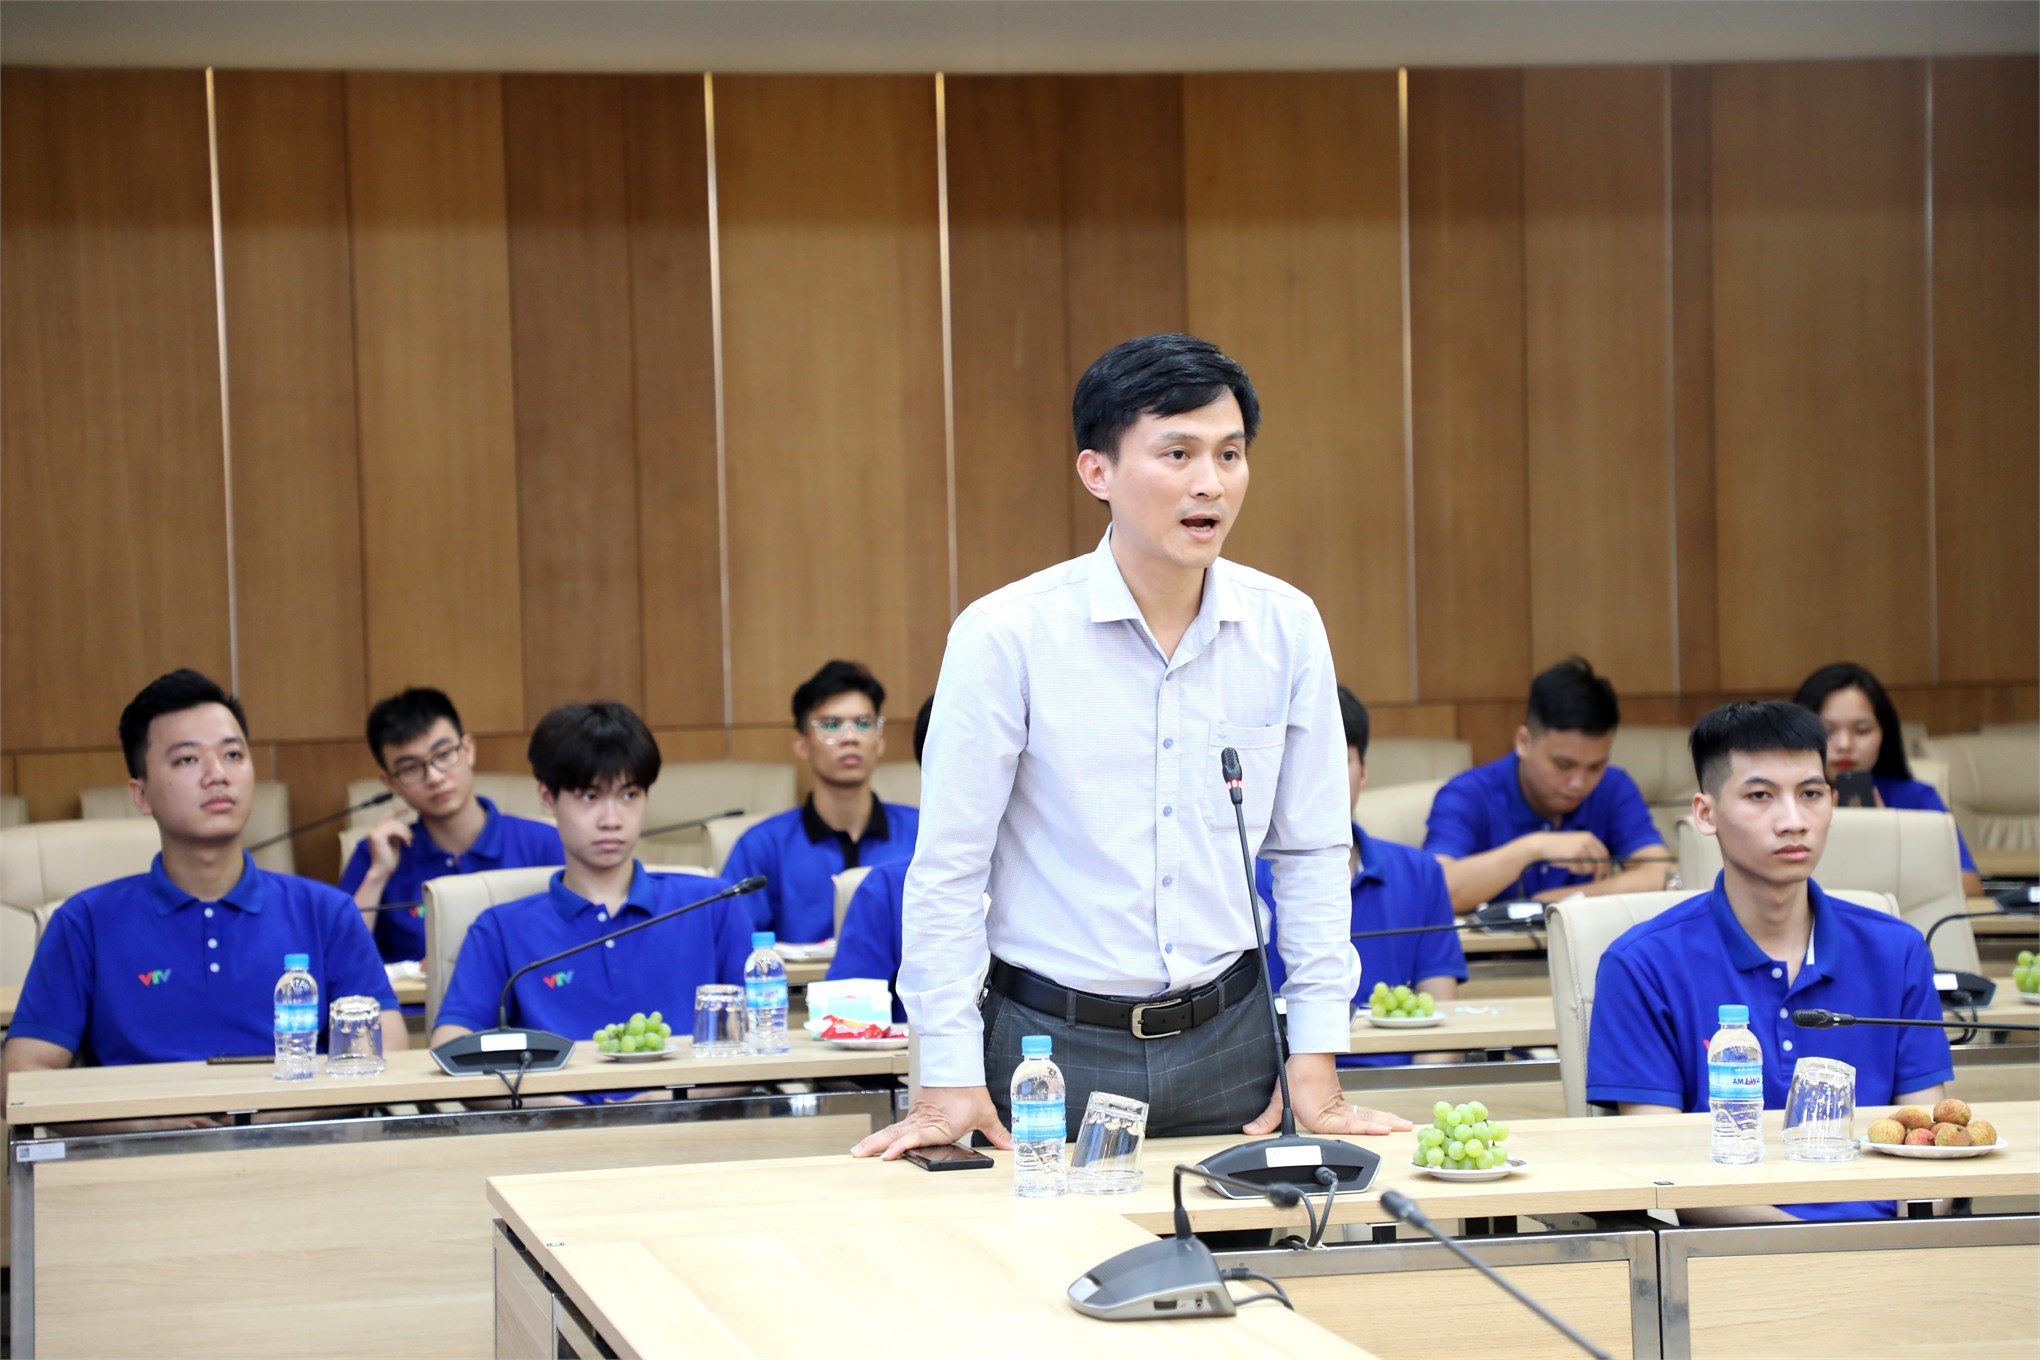 Đại học Công nghiệp Hà Nội gặp mặt và khen thưởng các đội tuyển Robocon tham gia vòng chung kết Cuộc thi Sáng tạo Robot Việt Nam 2023